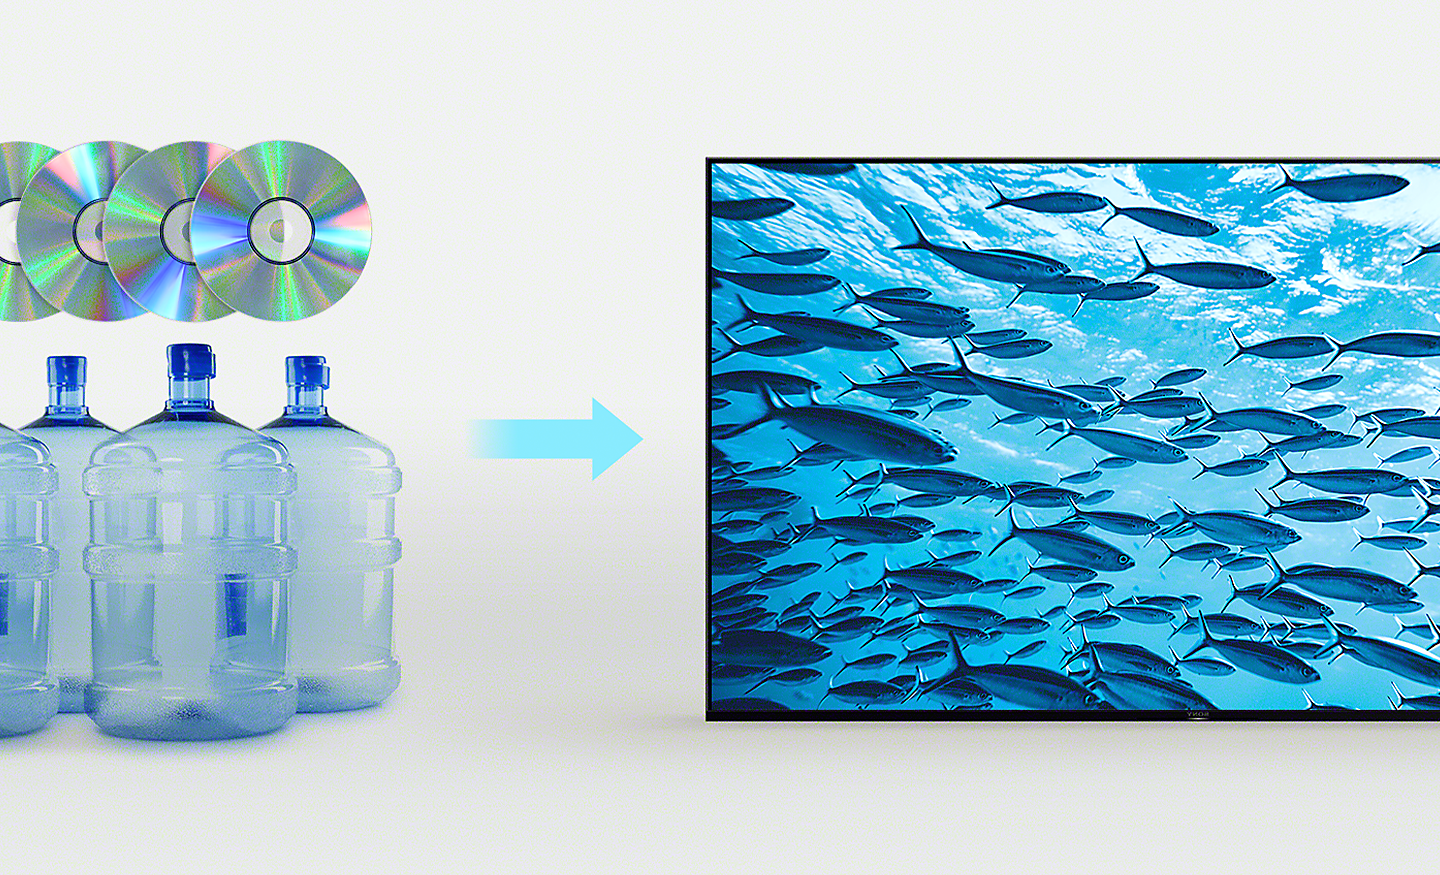 Imagen de cuatro botellas de plástico y cuatro CD (izquierda) y una flecha apuntando aun TV BRAVIA con una imagen de un pez nadando en el océano (derecha).